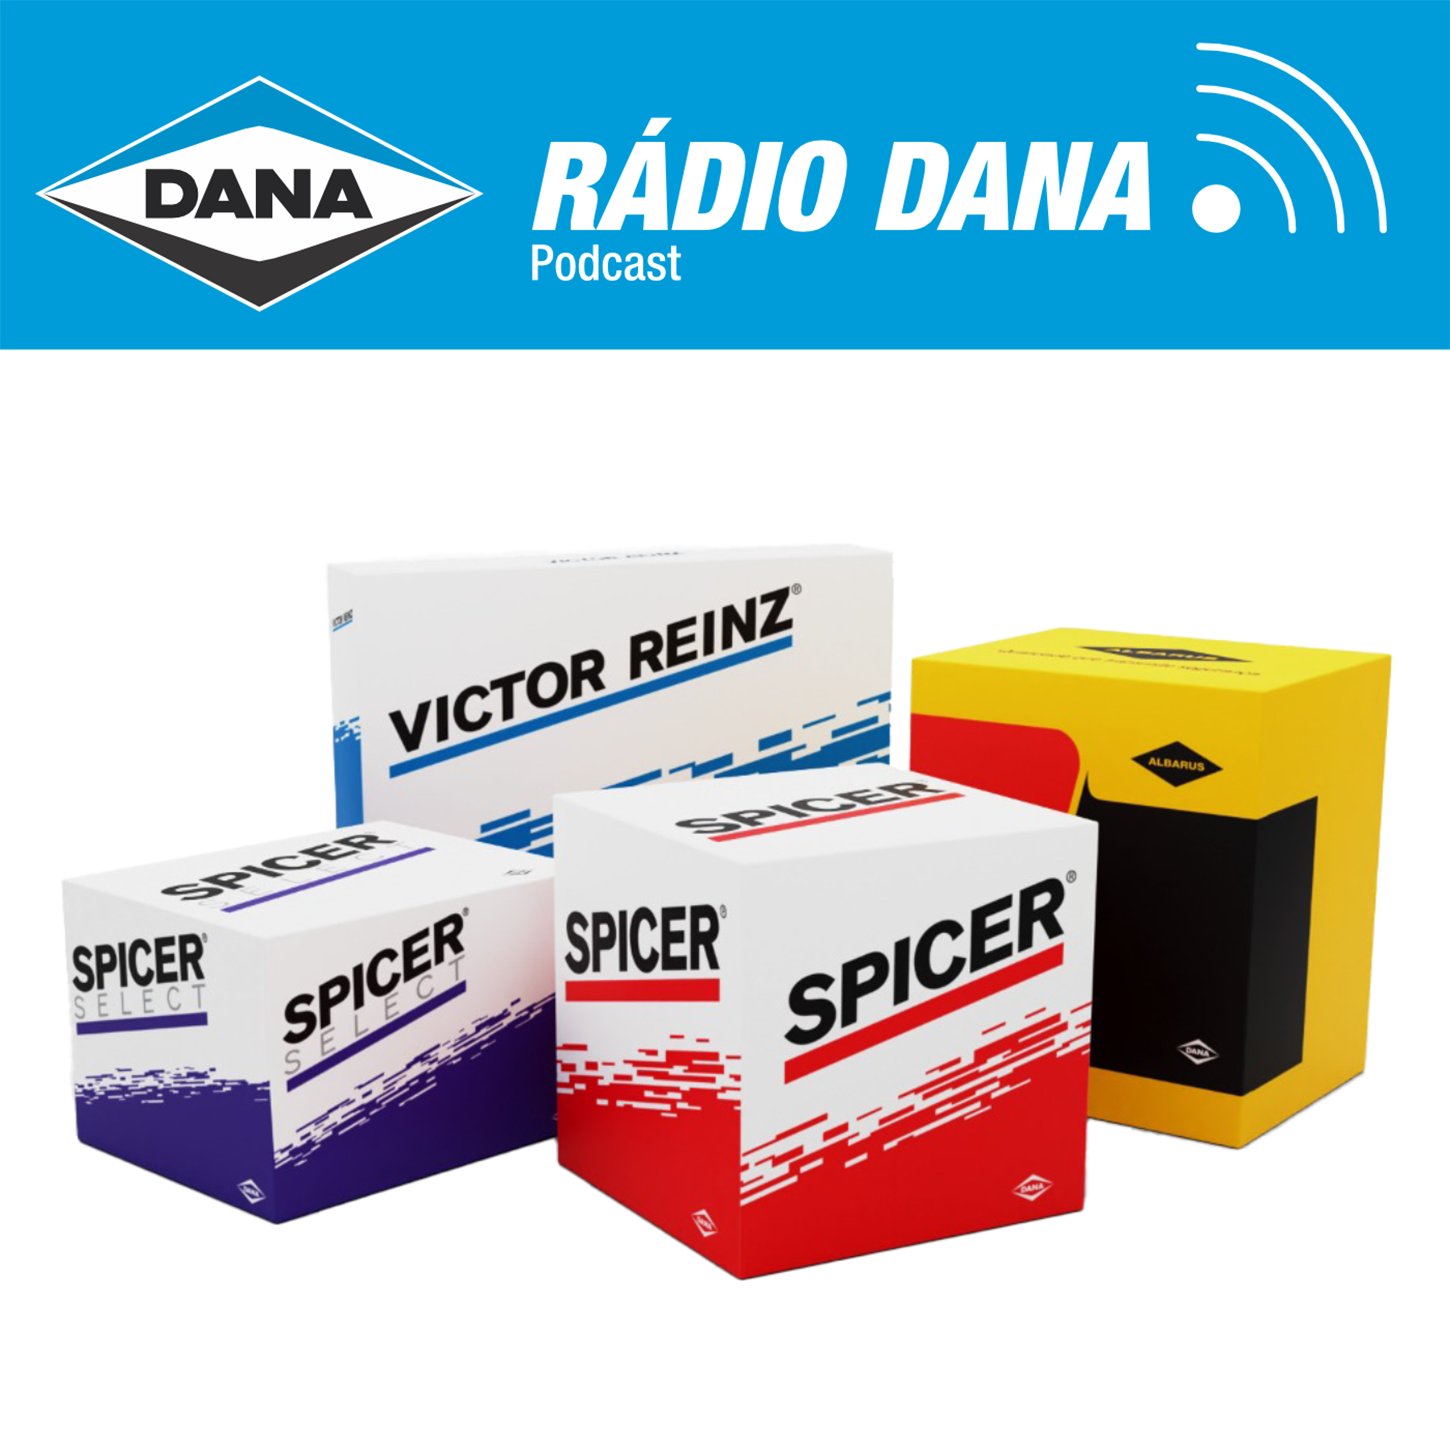 Episódio 96 - Rádio Dana - Prevenção e Superação